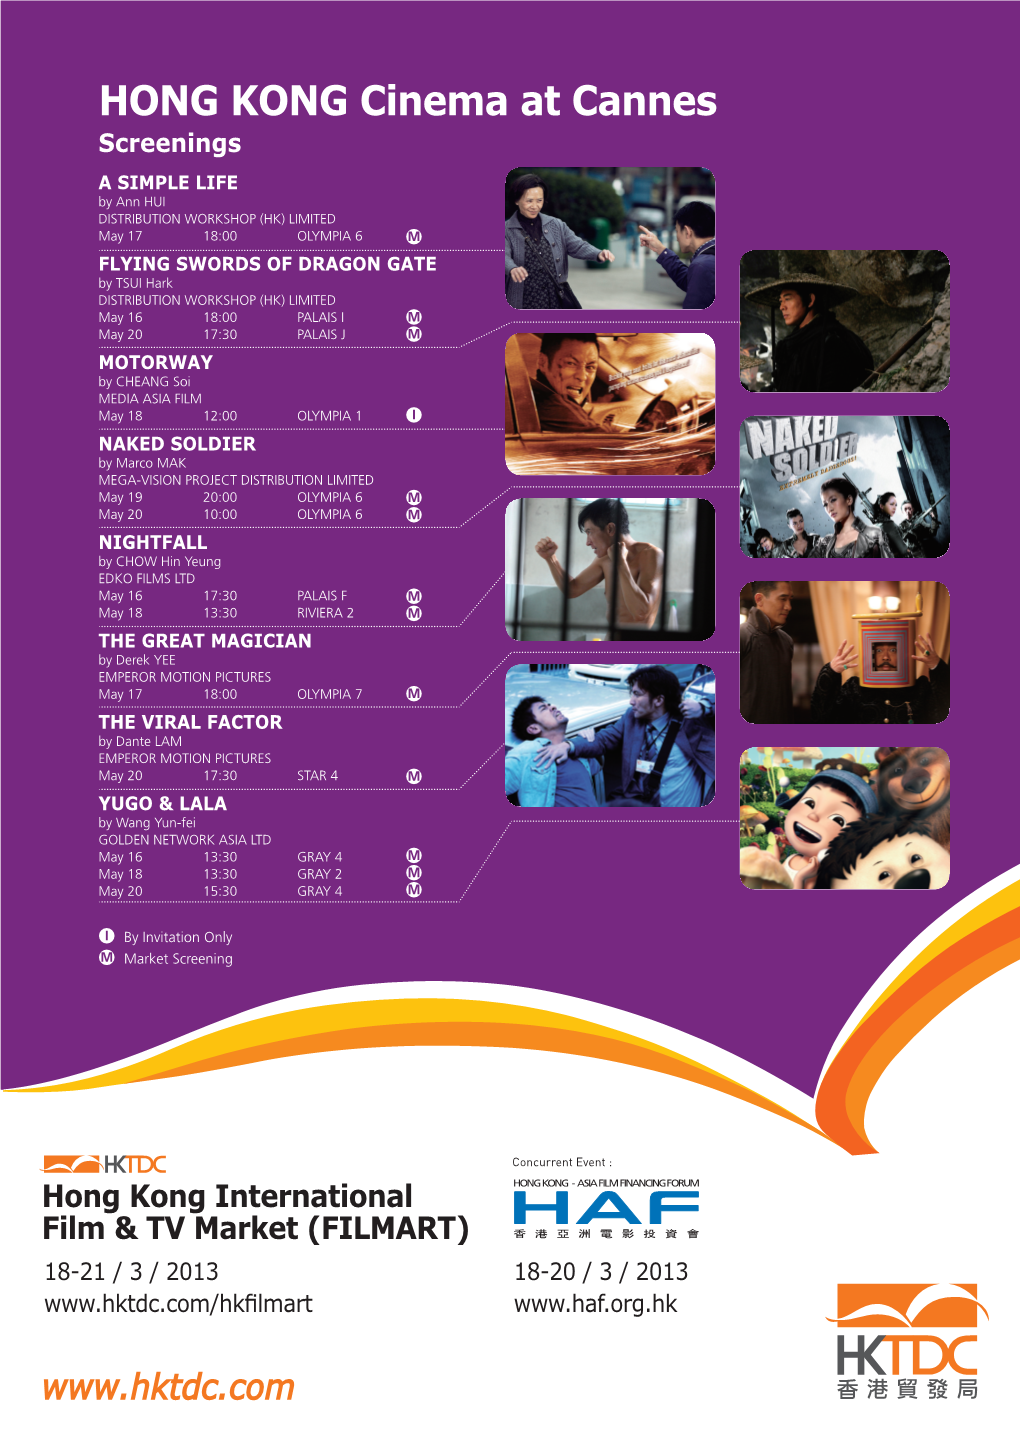 Hong Kong Cinema at Cannes